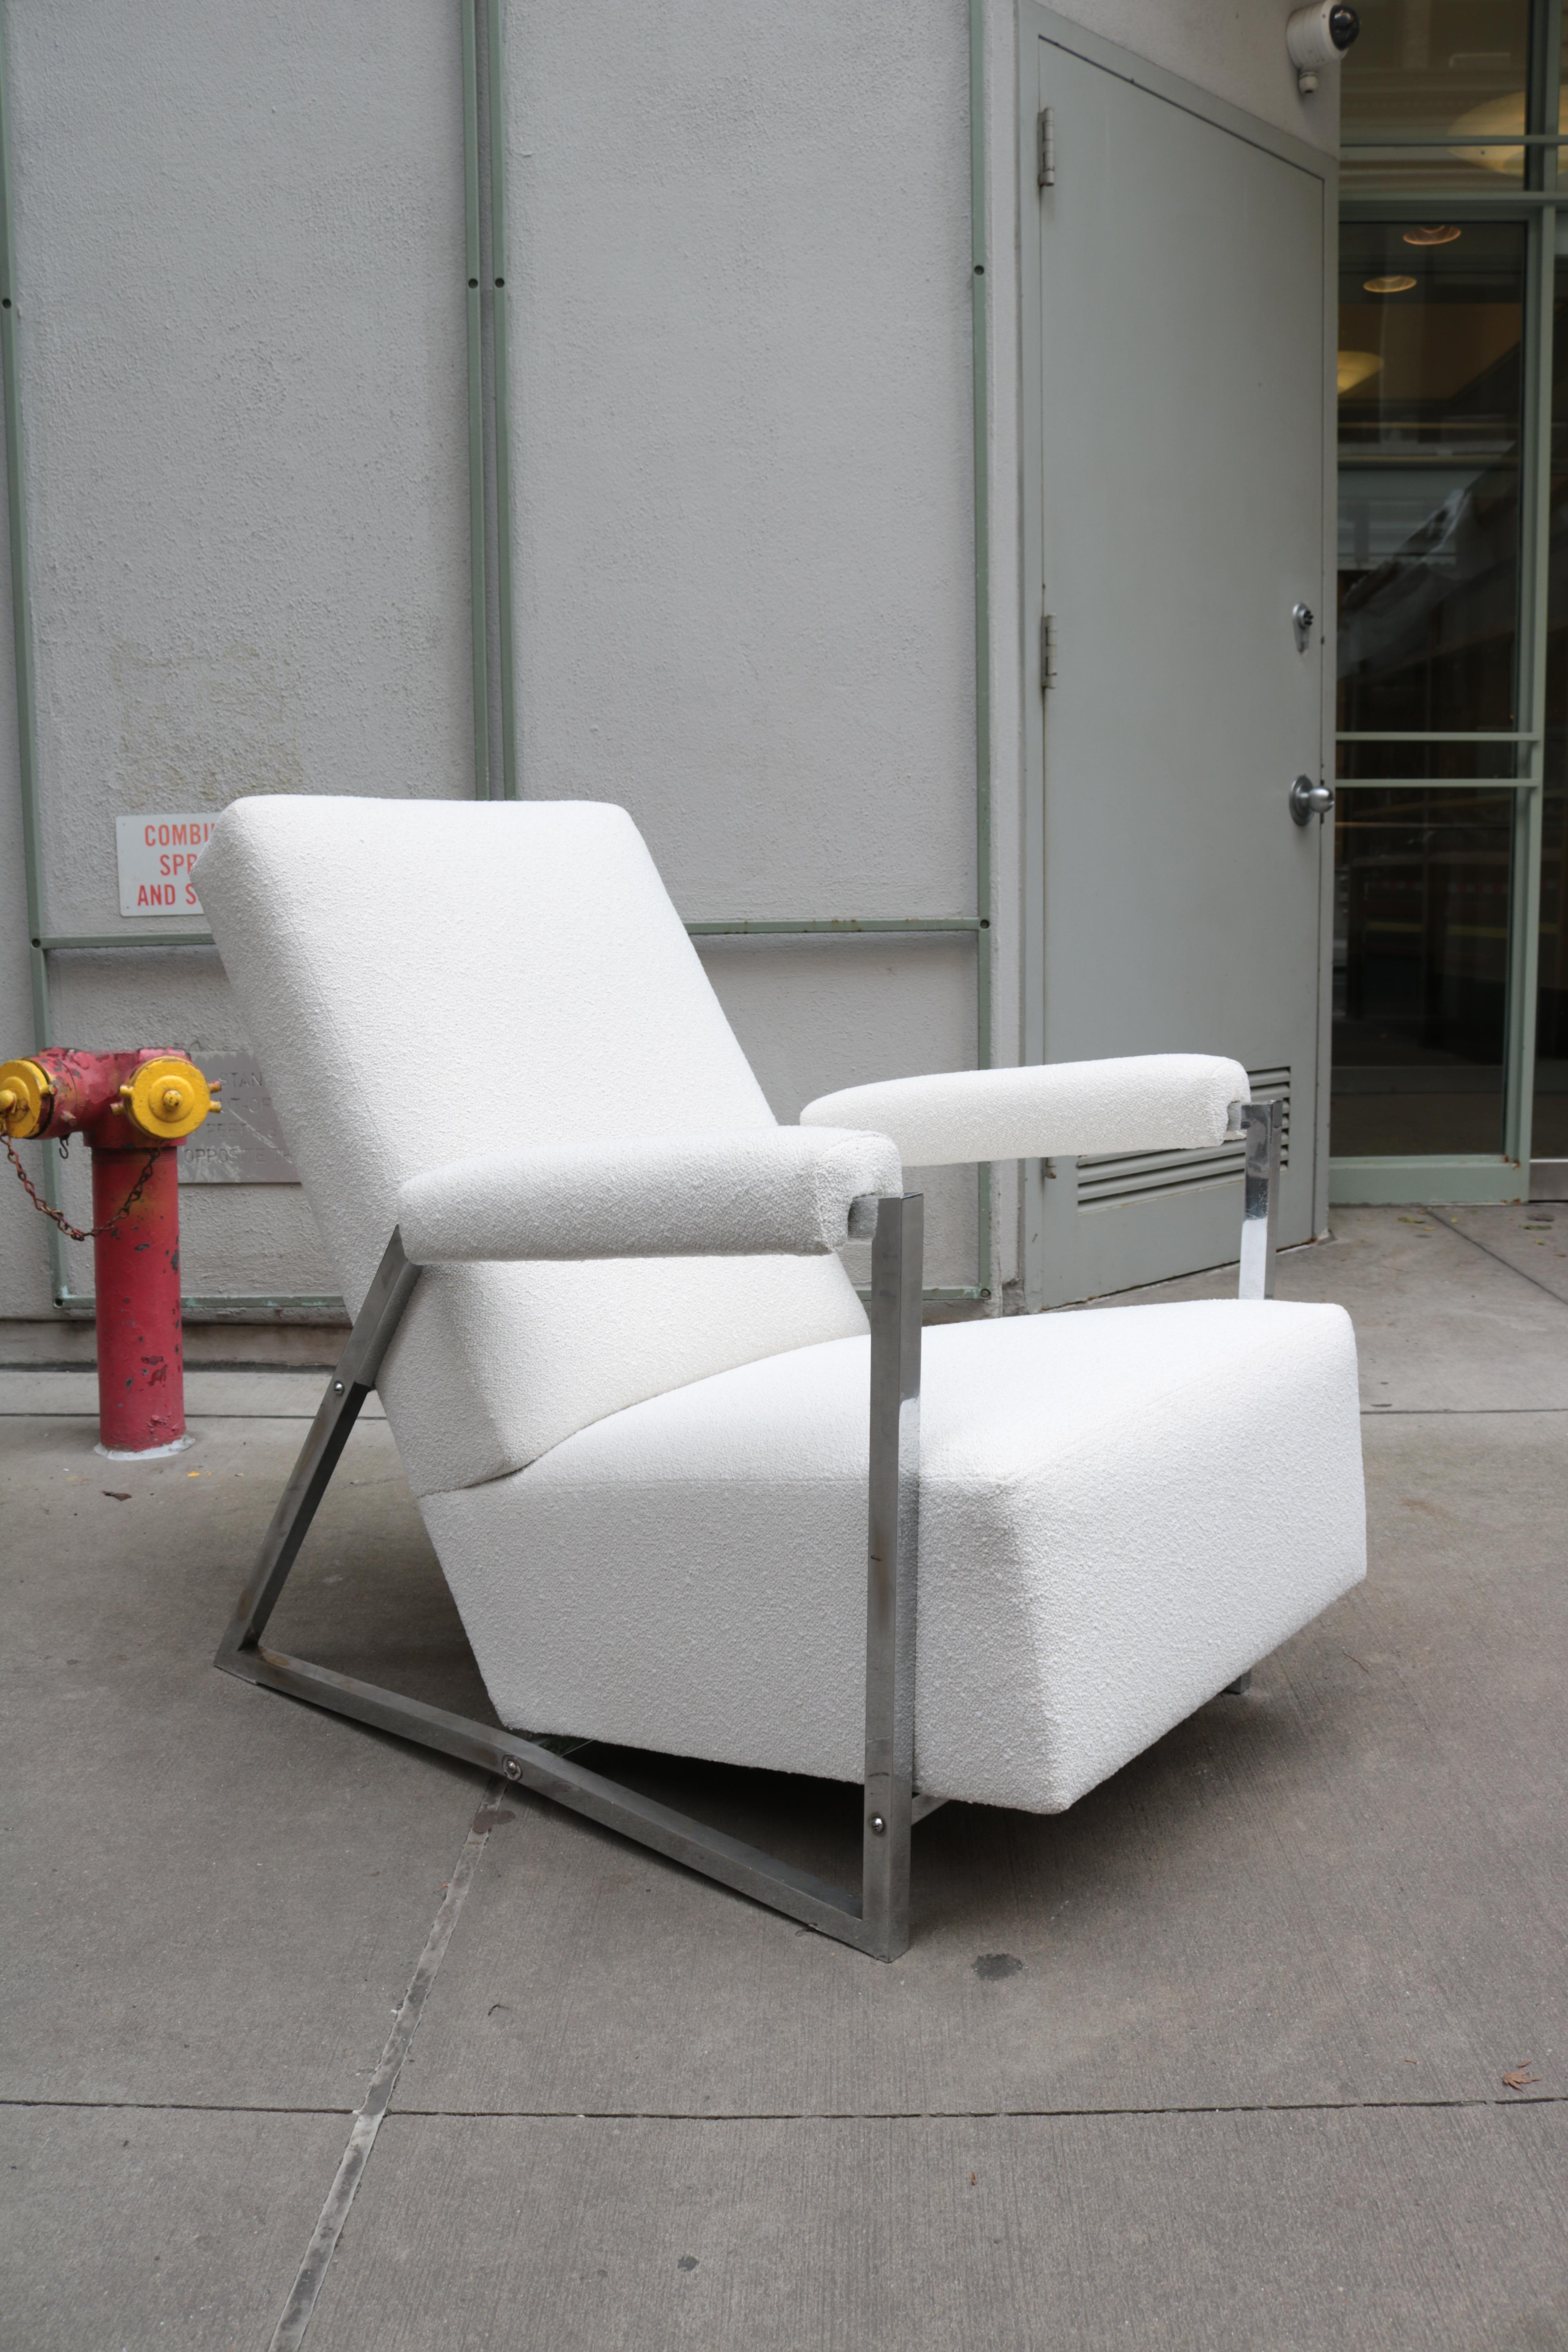 Ein Paar französische Sessel der Moderne. 
Gepolsterter Sitz und Rückenlehne auf verchromtem Stahlgestell mit Originalpatina.